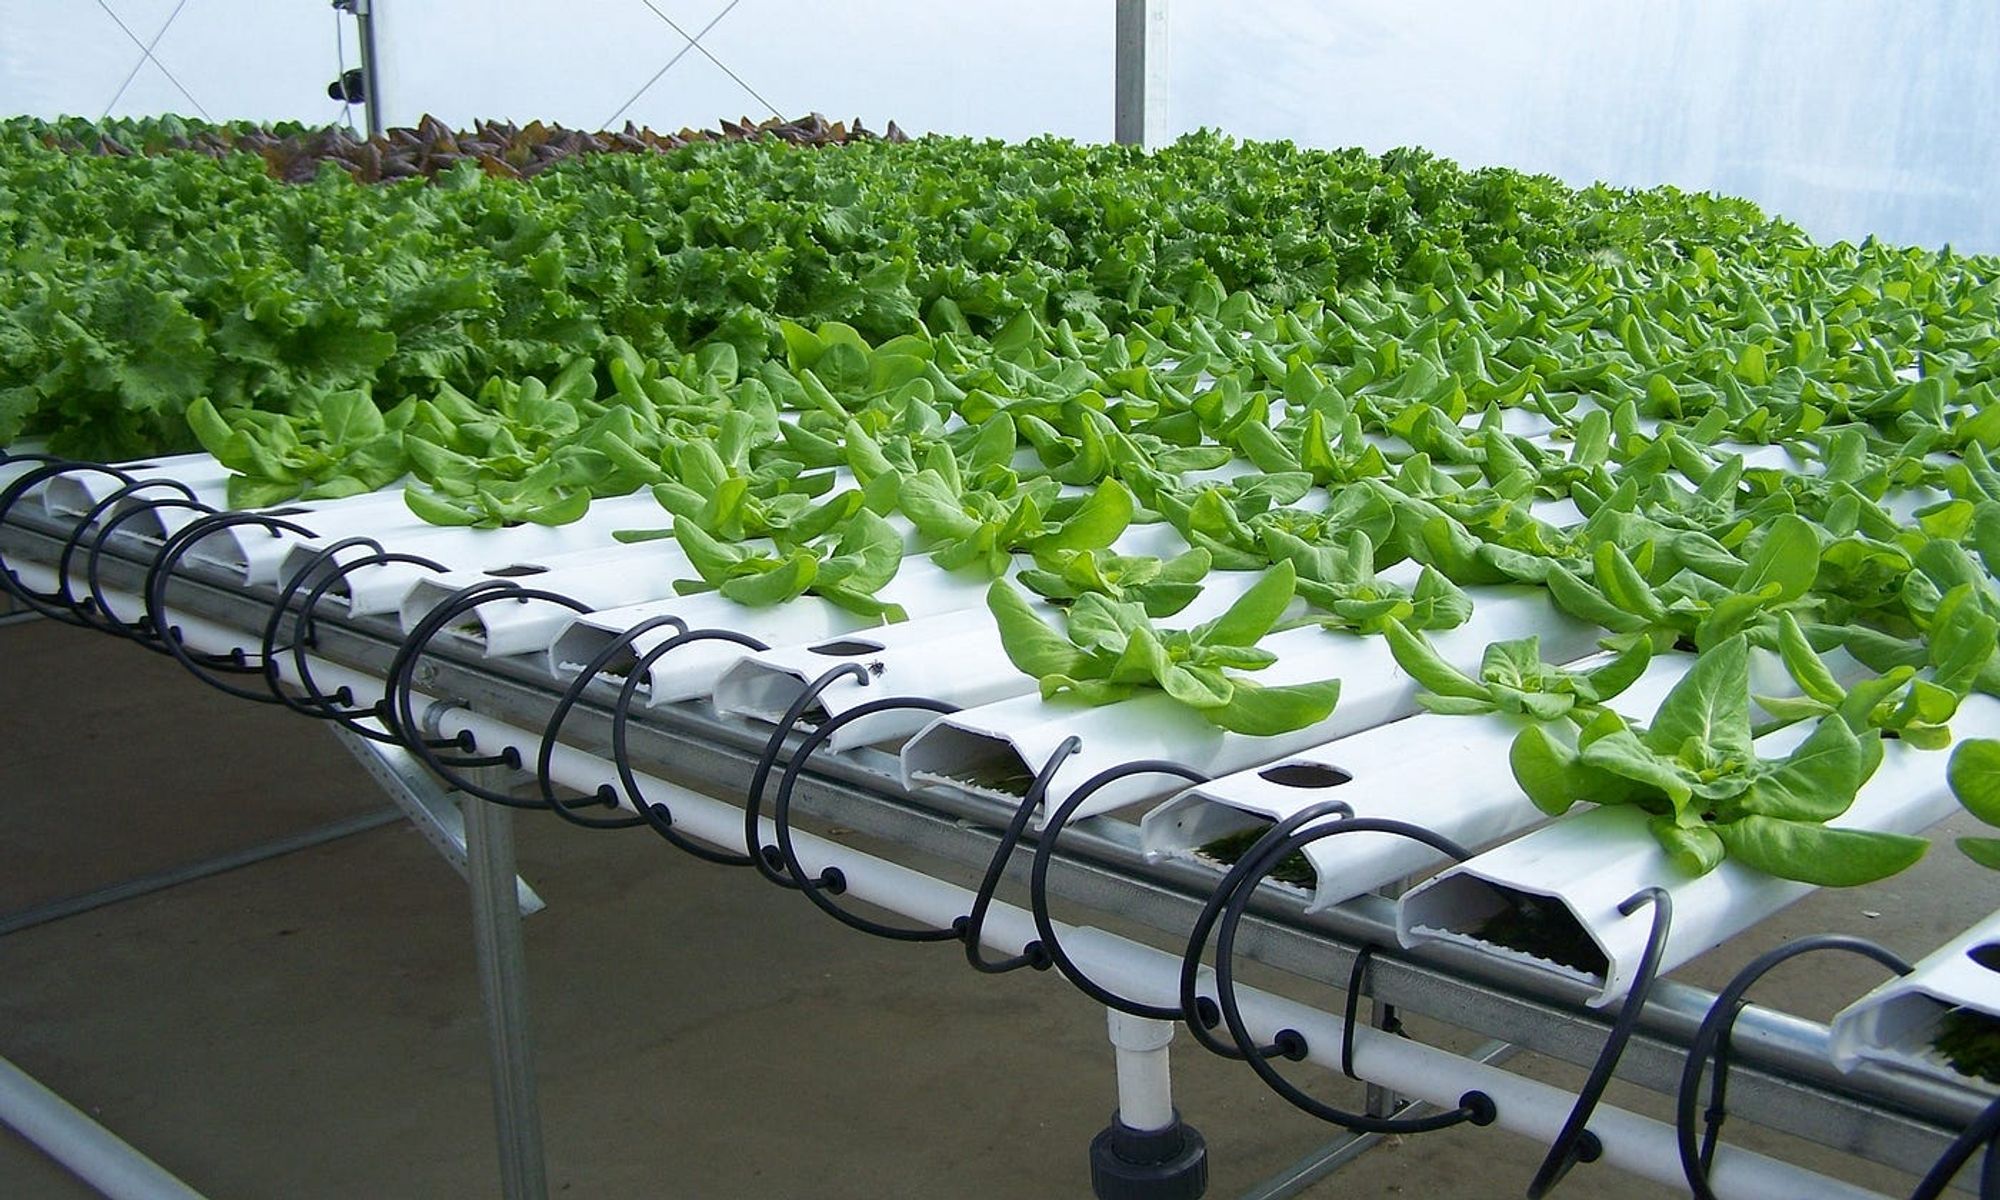 Invernaderos inteligentes pueden monitorear cada planta para garantizarle condiciones ideales de crecimiento.